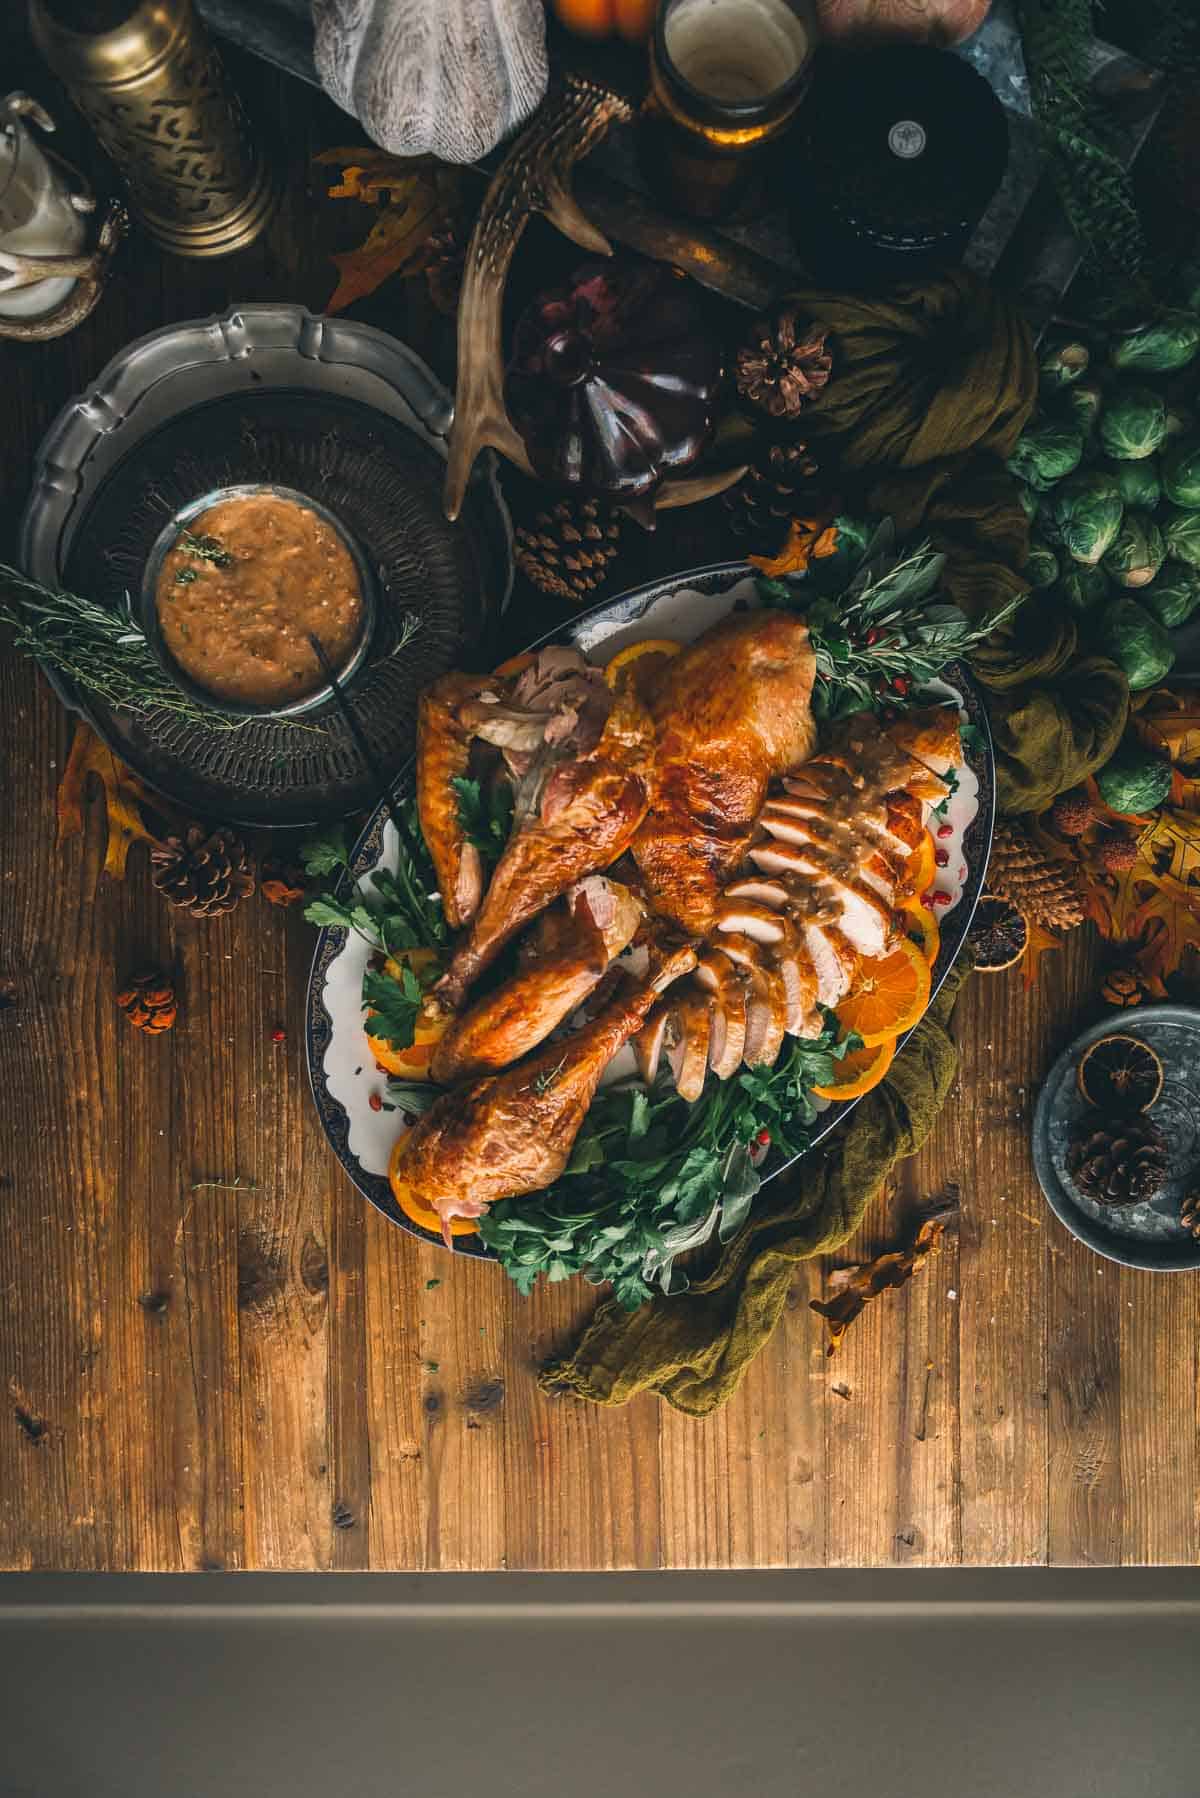 Carved roast turkey on a serving platter. 